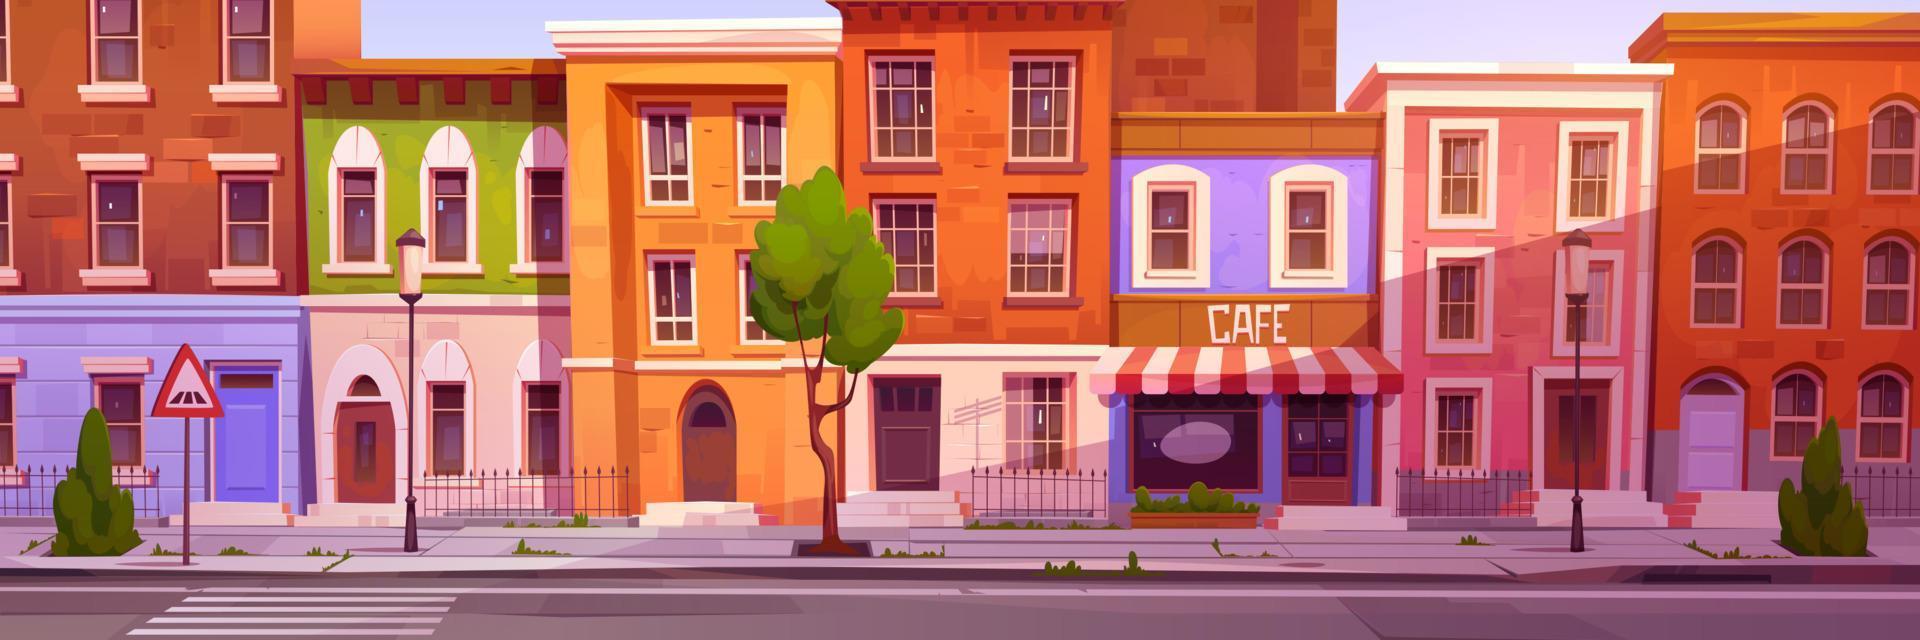 tekenfilm stad straat met mooi hoor huizen en cafe vector